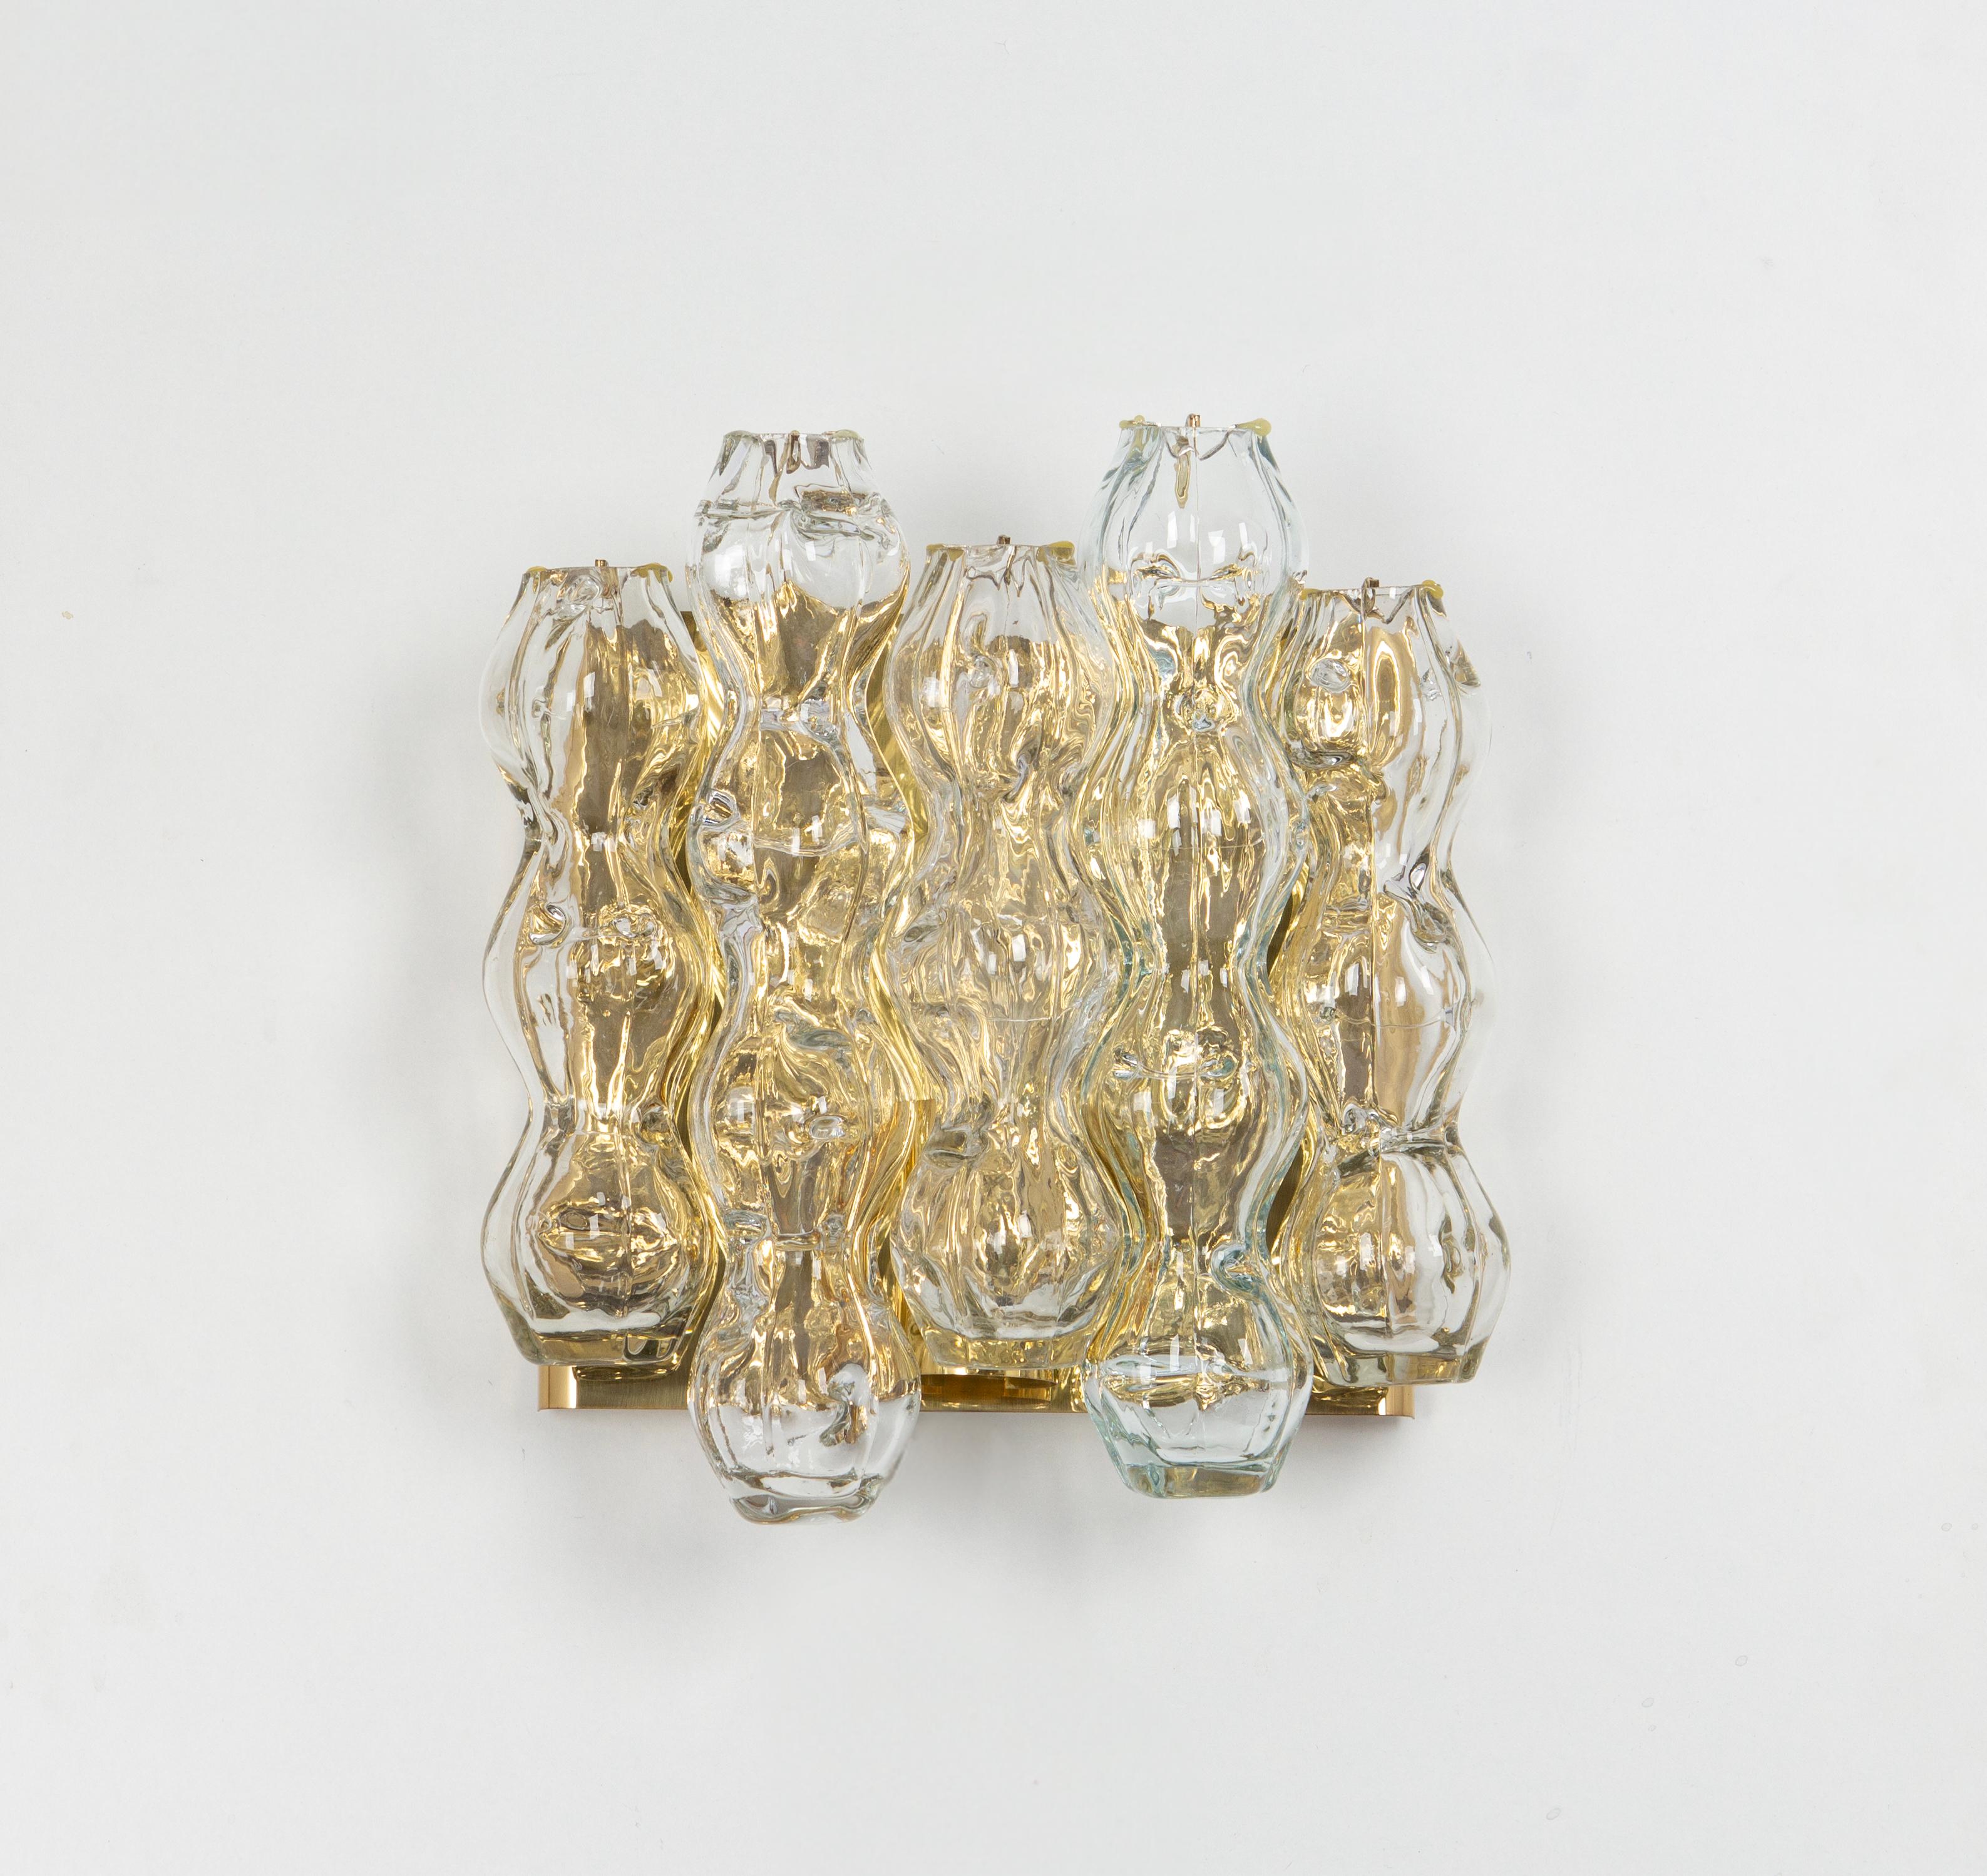 Wunderschönes Paar Wandleuchten aus der Mitte des Jahrhunderts mit Murano-Glasröhren, hergestellt von Doria Leuchten, Deutschland, ca. 1960-1969.

Hochwertig und in sehr gutem Zustand. Gereinigt, gut verkabelt und einsatzbereit. 

Jede Leuchte